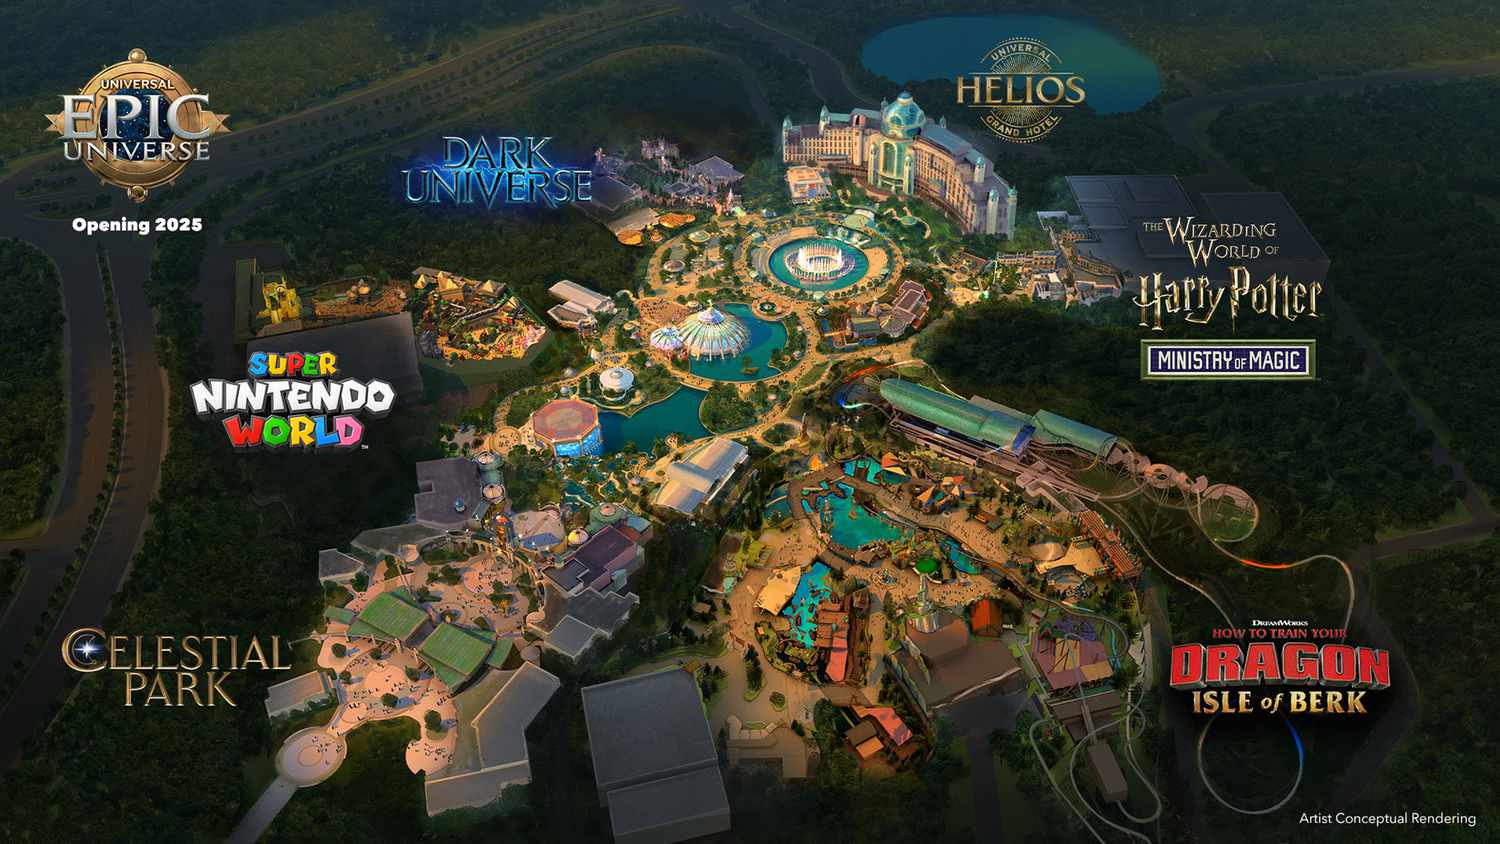 Universal Epic Universe aprirà nel 2025 ad Orlando!